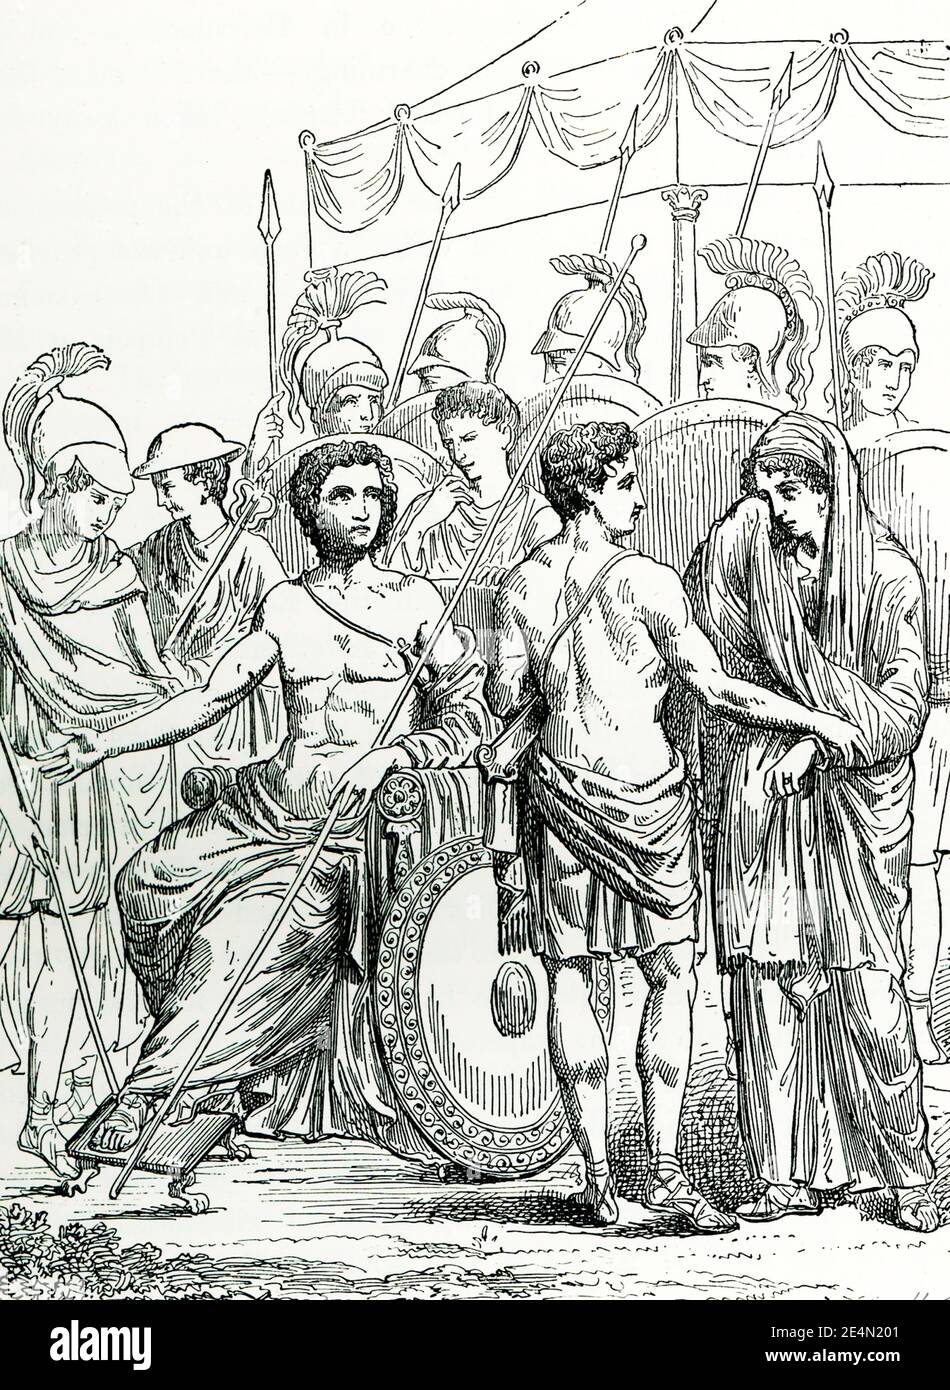 Briseis wurde Achilles von einem Wandgemälde in Pompeji weggenommen. Achilles, umgeben von Myrmidons schaut auf Jugendliche Briseis, die in von Patroclus geführt wird Stockfoto